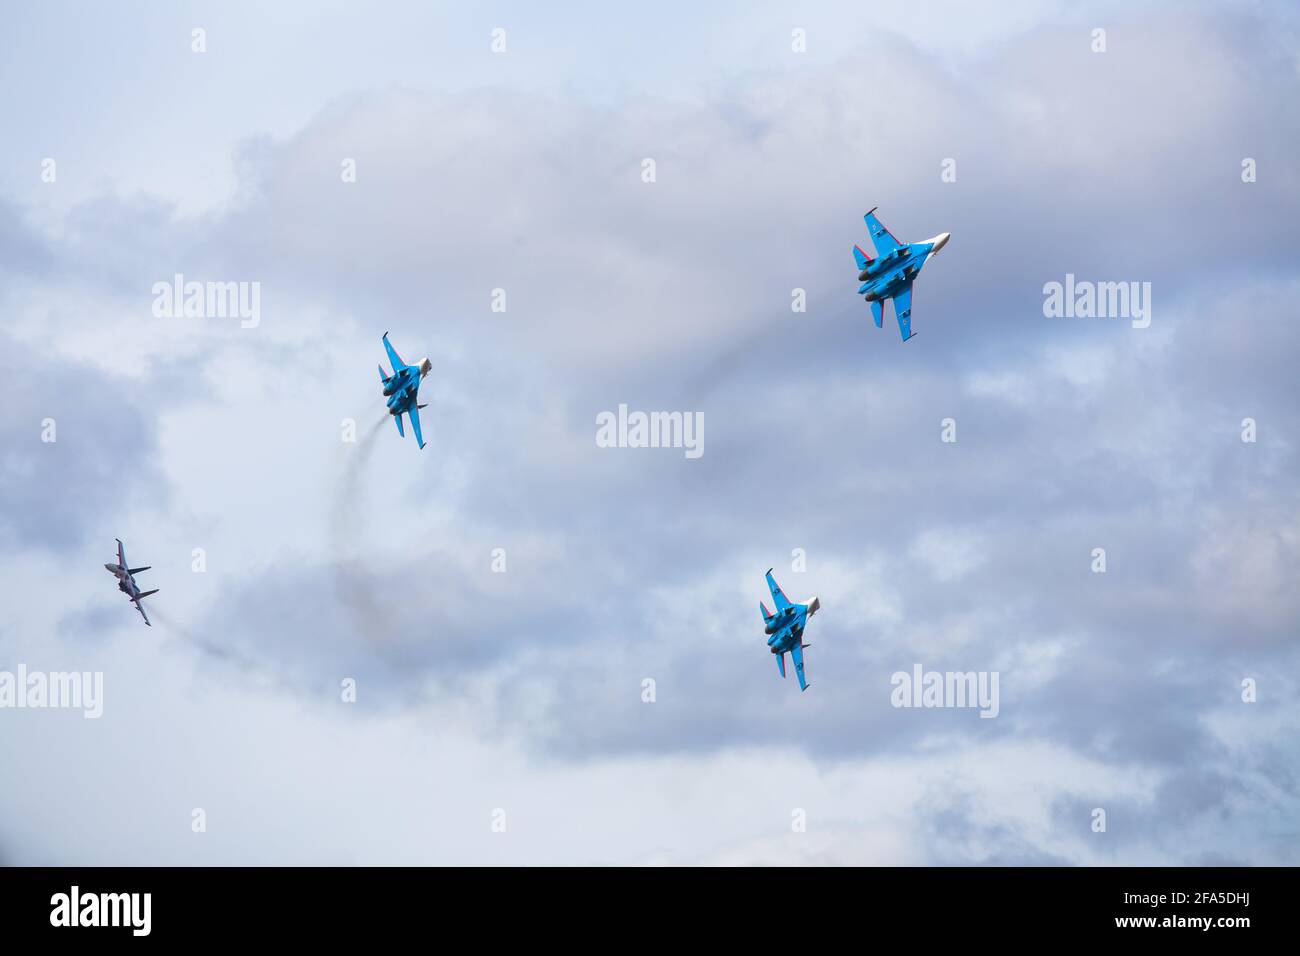 Vier Düsenflugzeuge fliegen in enger Formation. Gefährliche Kunstflüge werden auf dem Luftfahrtfestival von Piloten gezeigt. Militärparade moderner Kämpfer Stockfoto